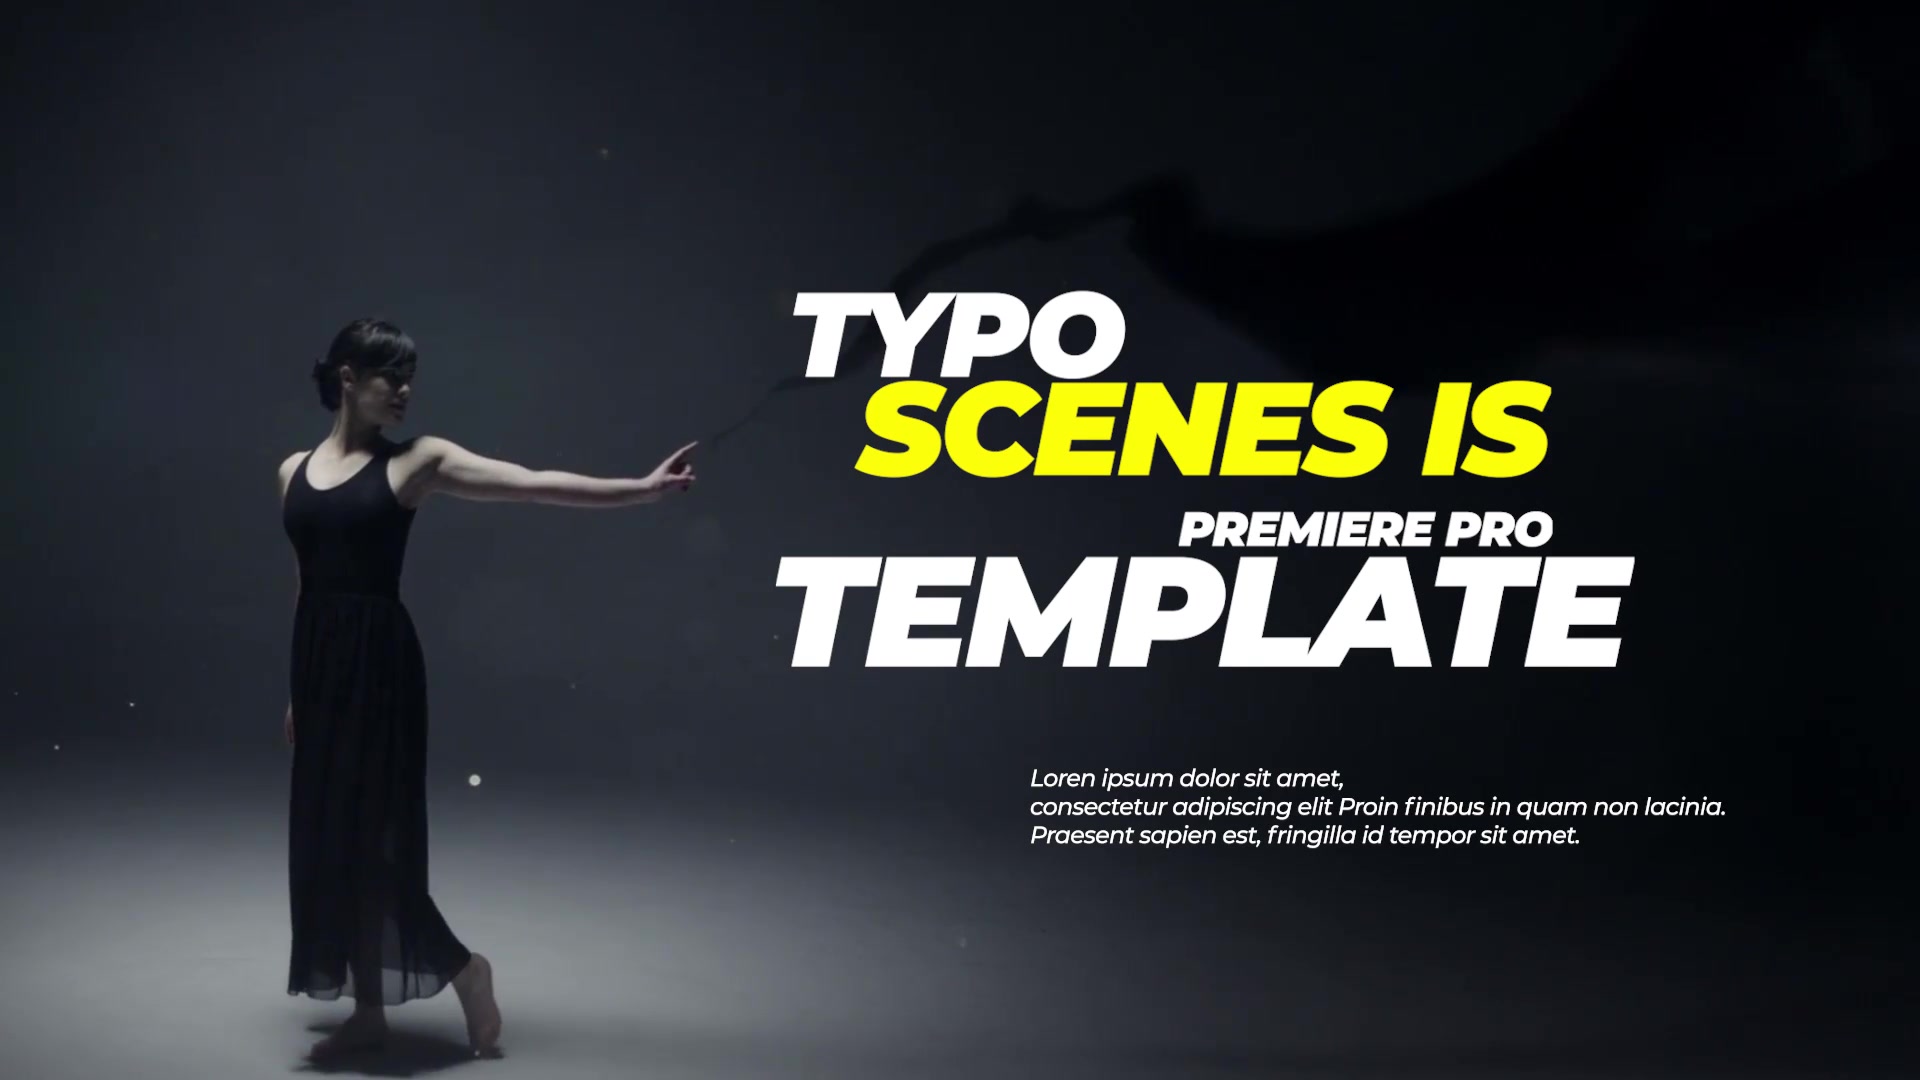 Trendy Typo Scenes Videohive 35156070 Premiere Pro Image 11